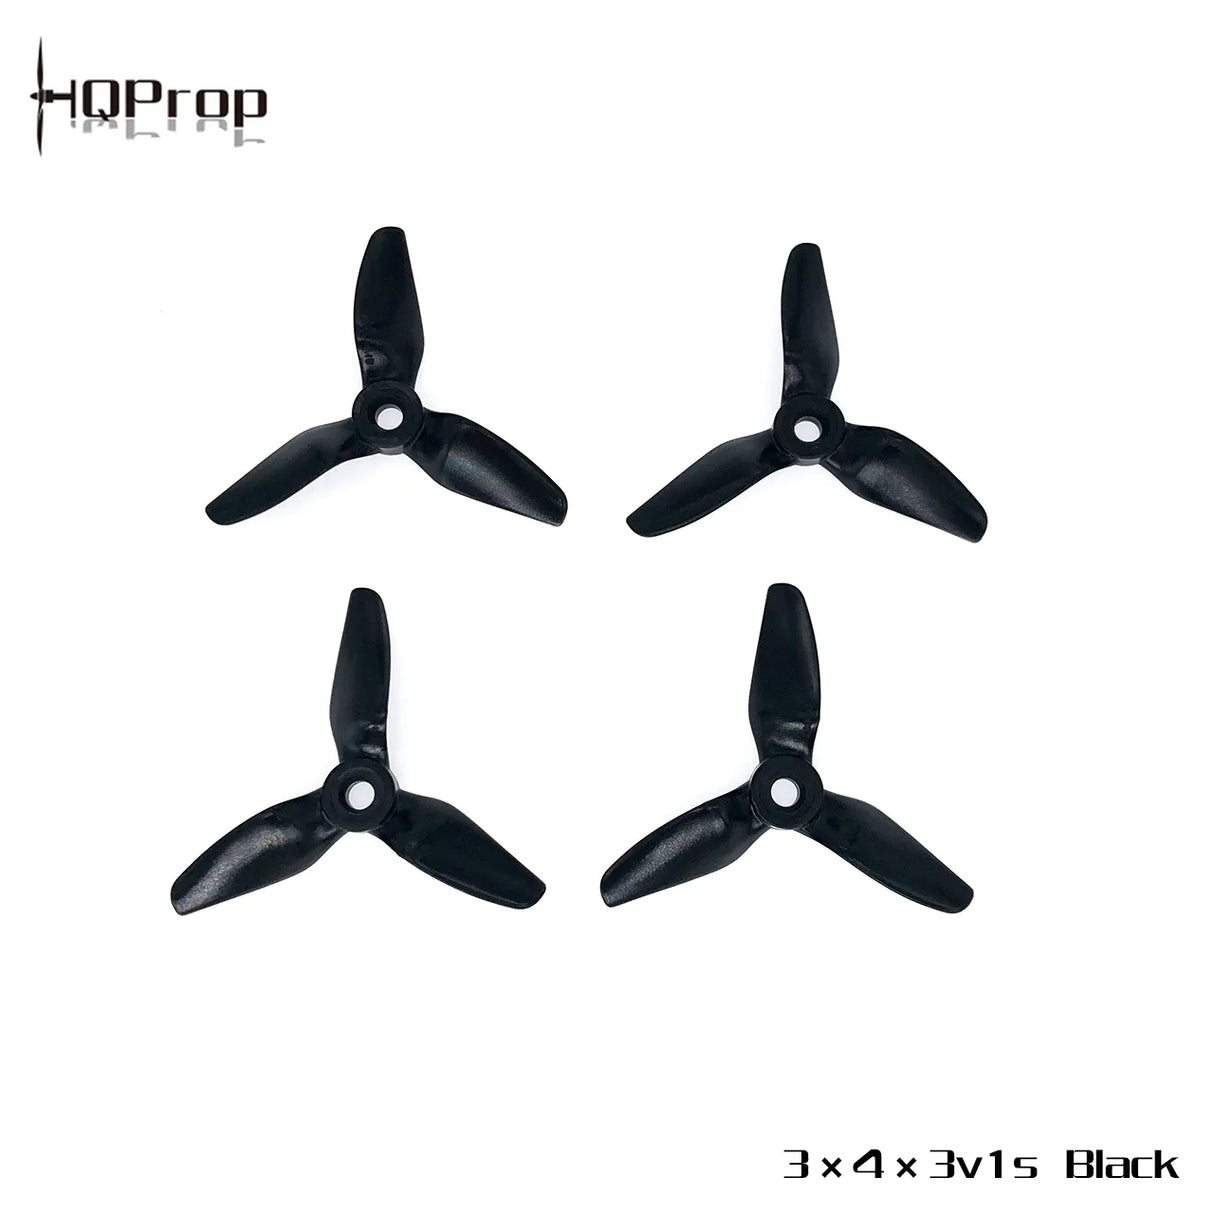 HQProp 3X4X3V1S - DroneDynamics.ca